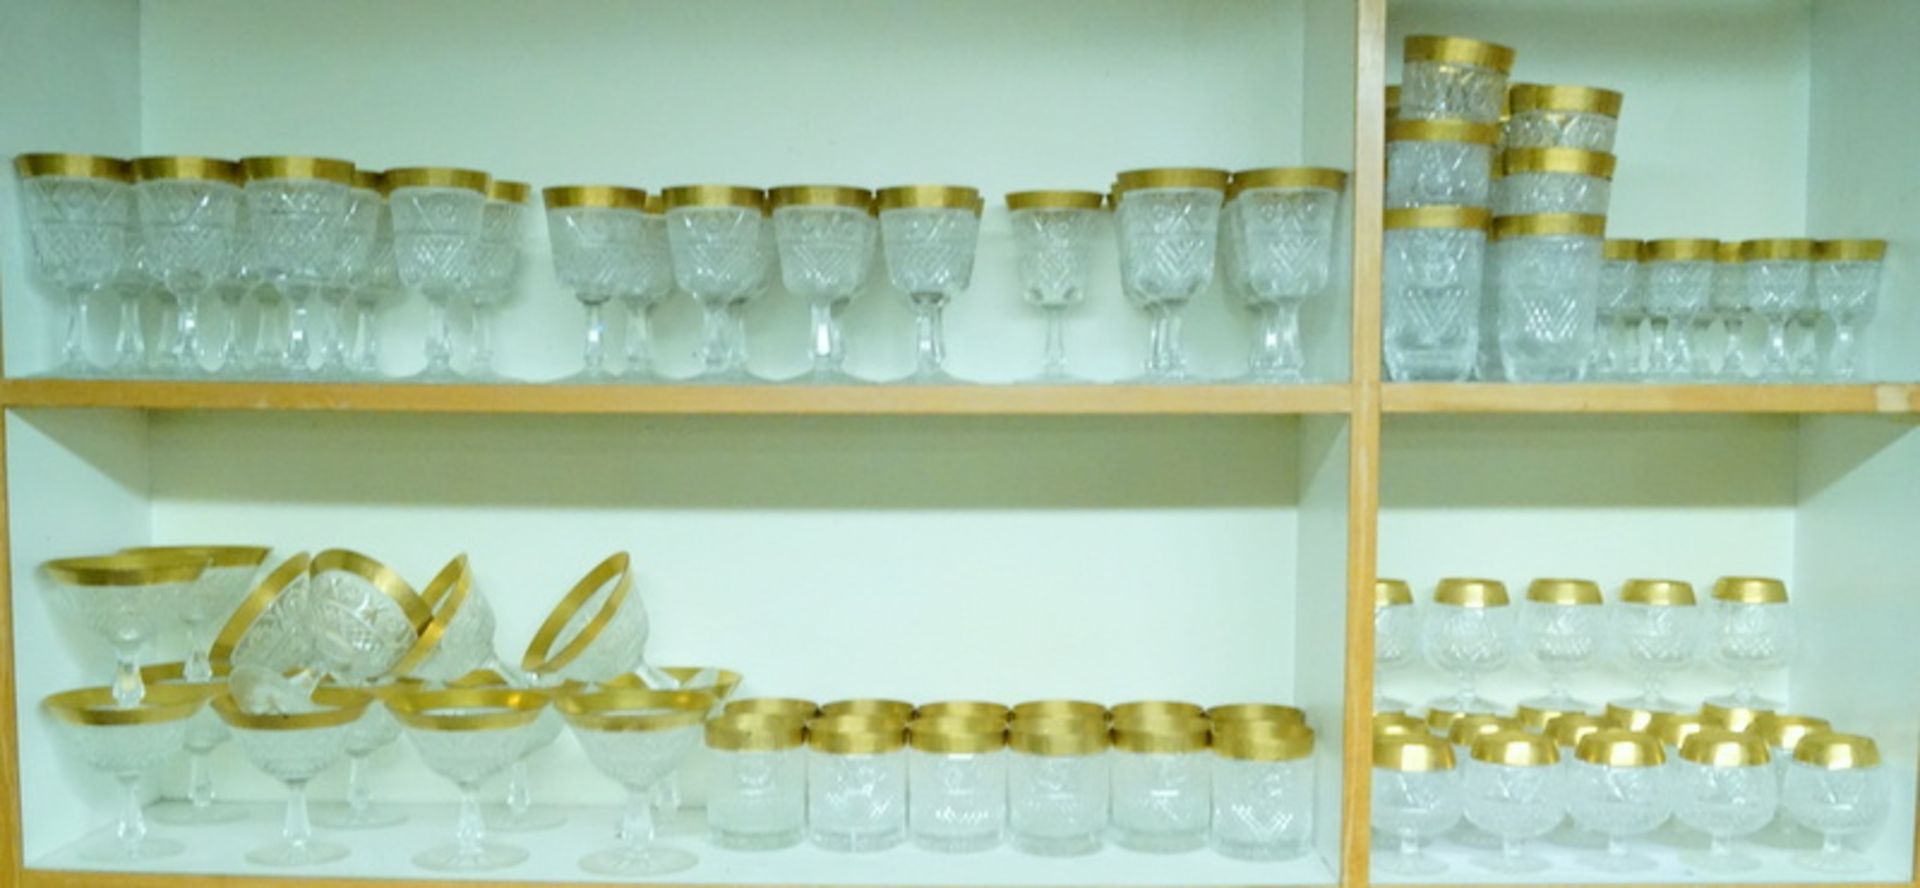 Umfangreiche Trinkglas-Serie, wohl Zwieselfarbloses Kristallglas mit breitem reliefiertem